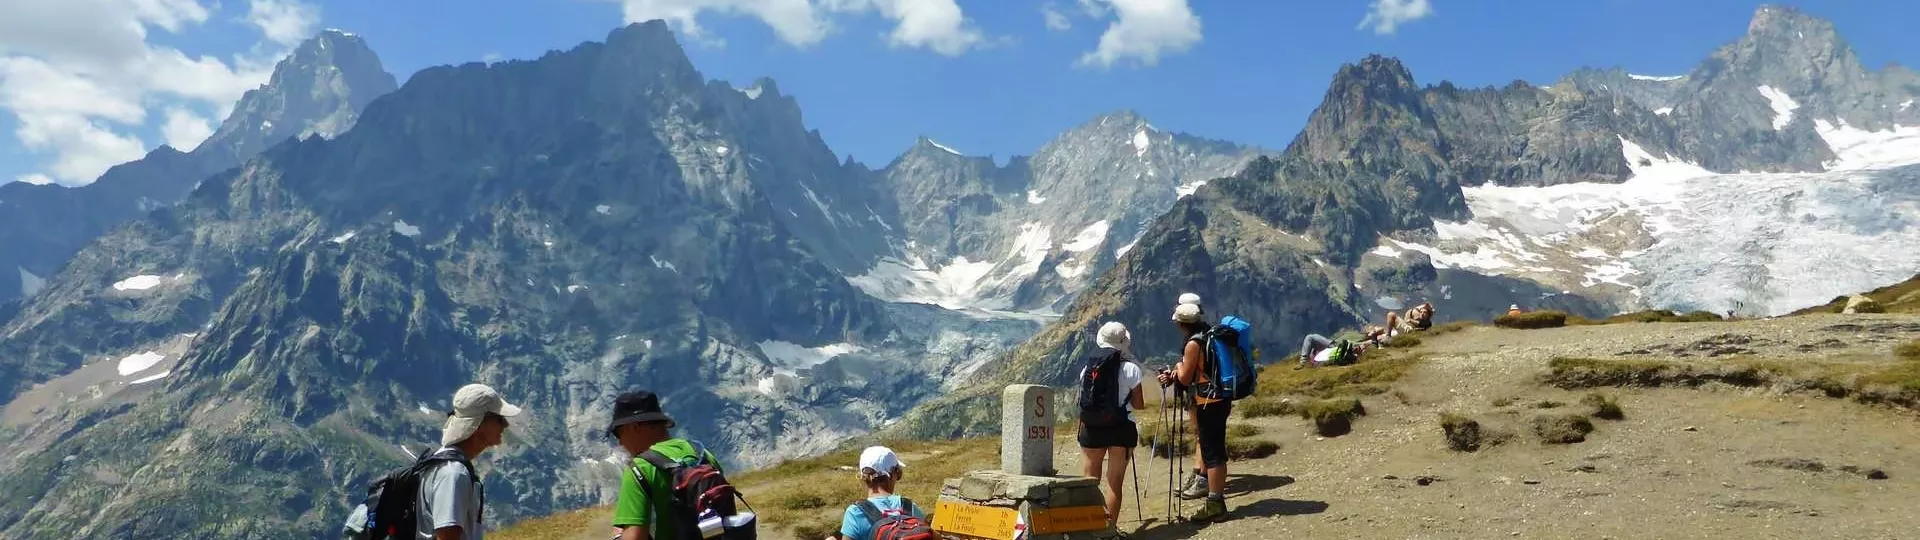 Lincontournable Tour Du Mont Blanc En 7 Jours Confort